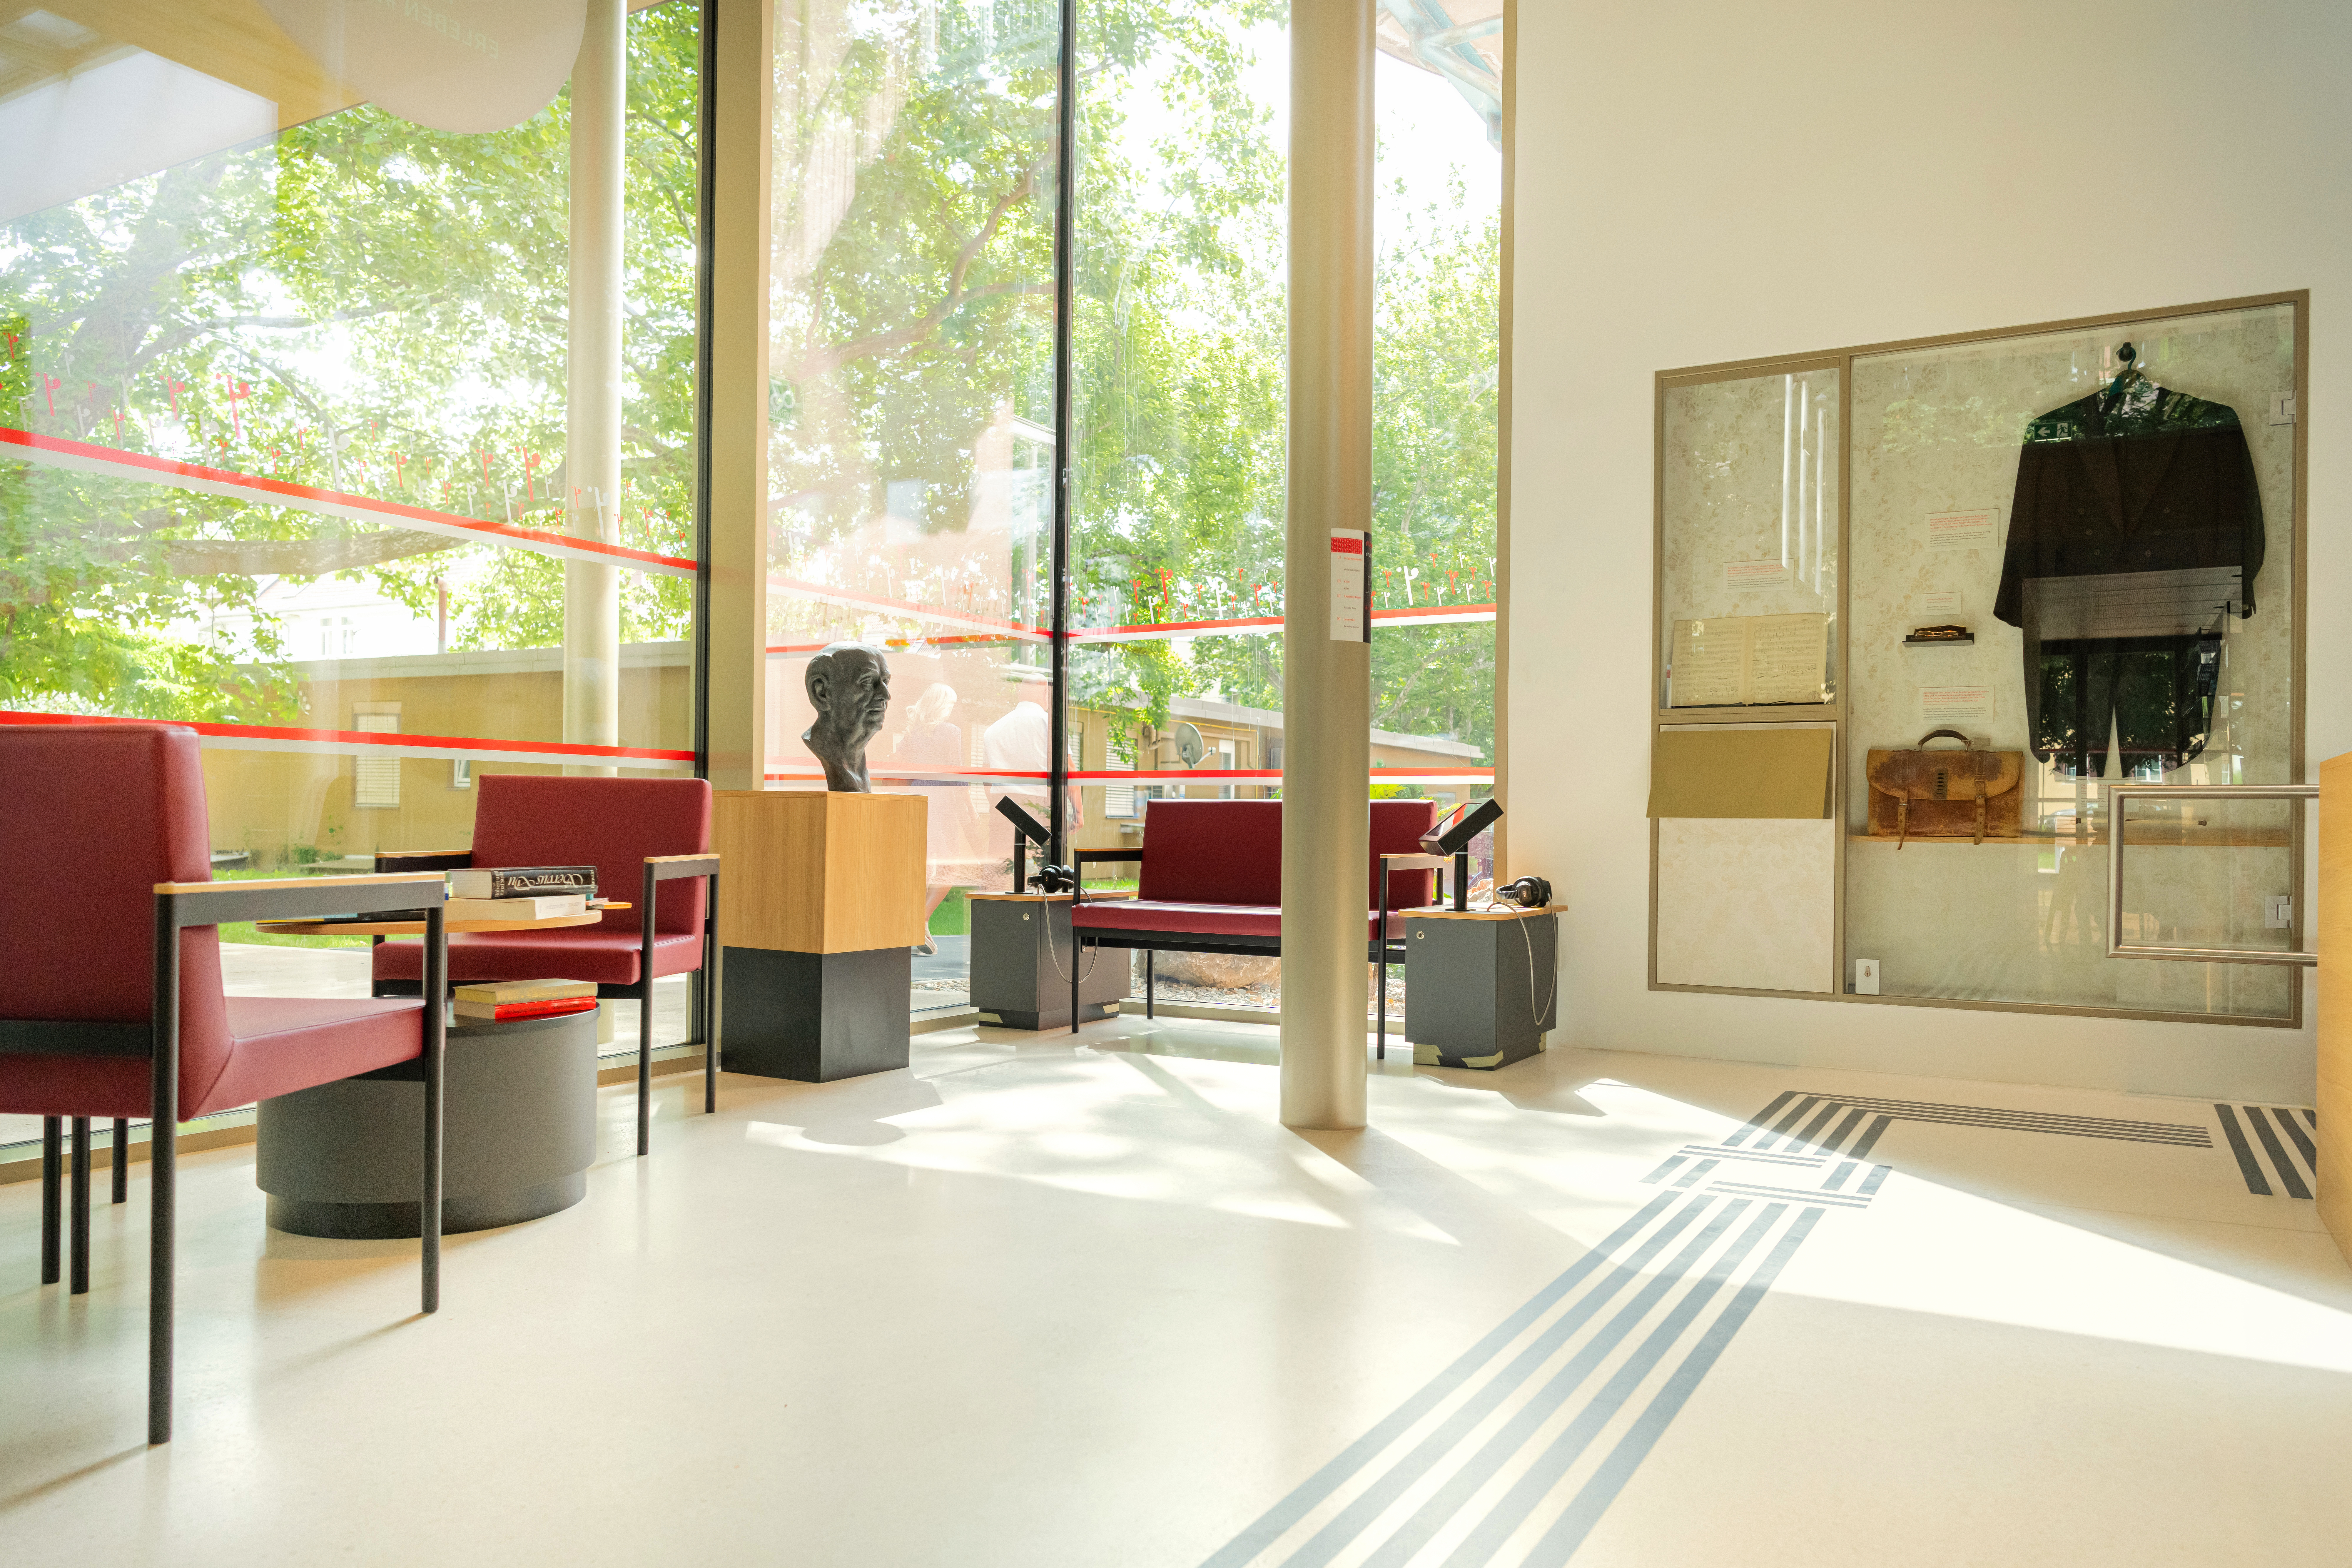 Architekturfoto des Innenraums. Stühle und Bänke, eine Büste von Robert Stolz.